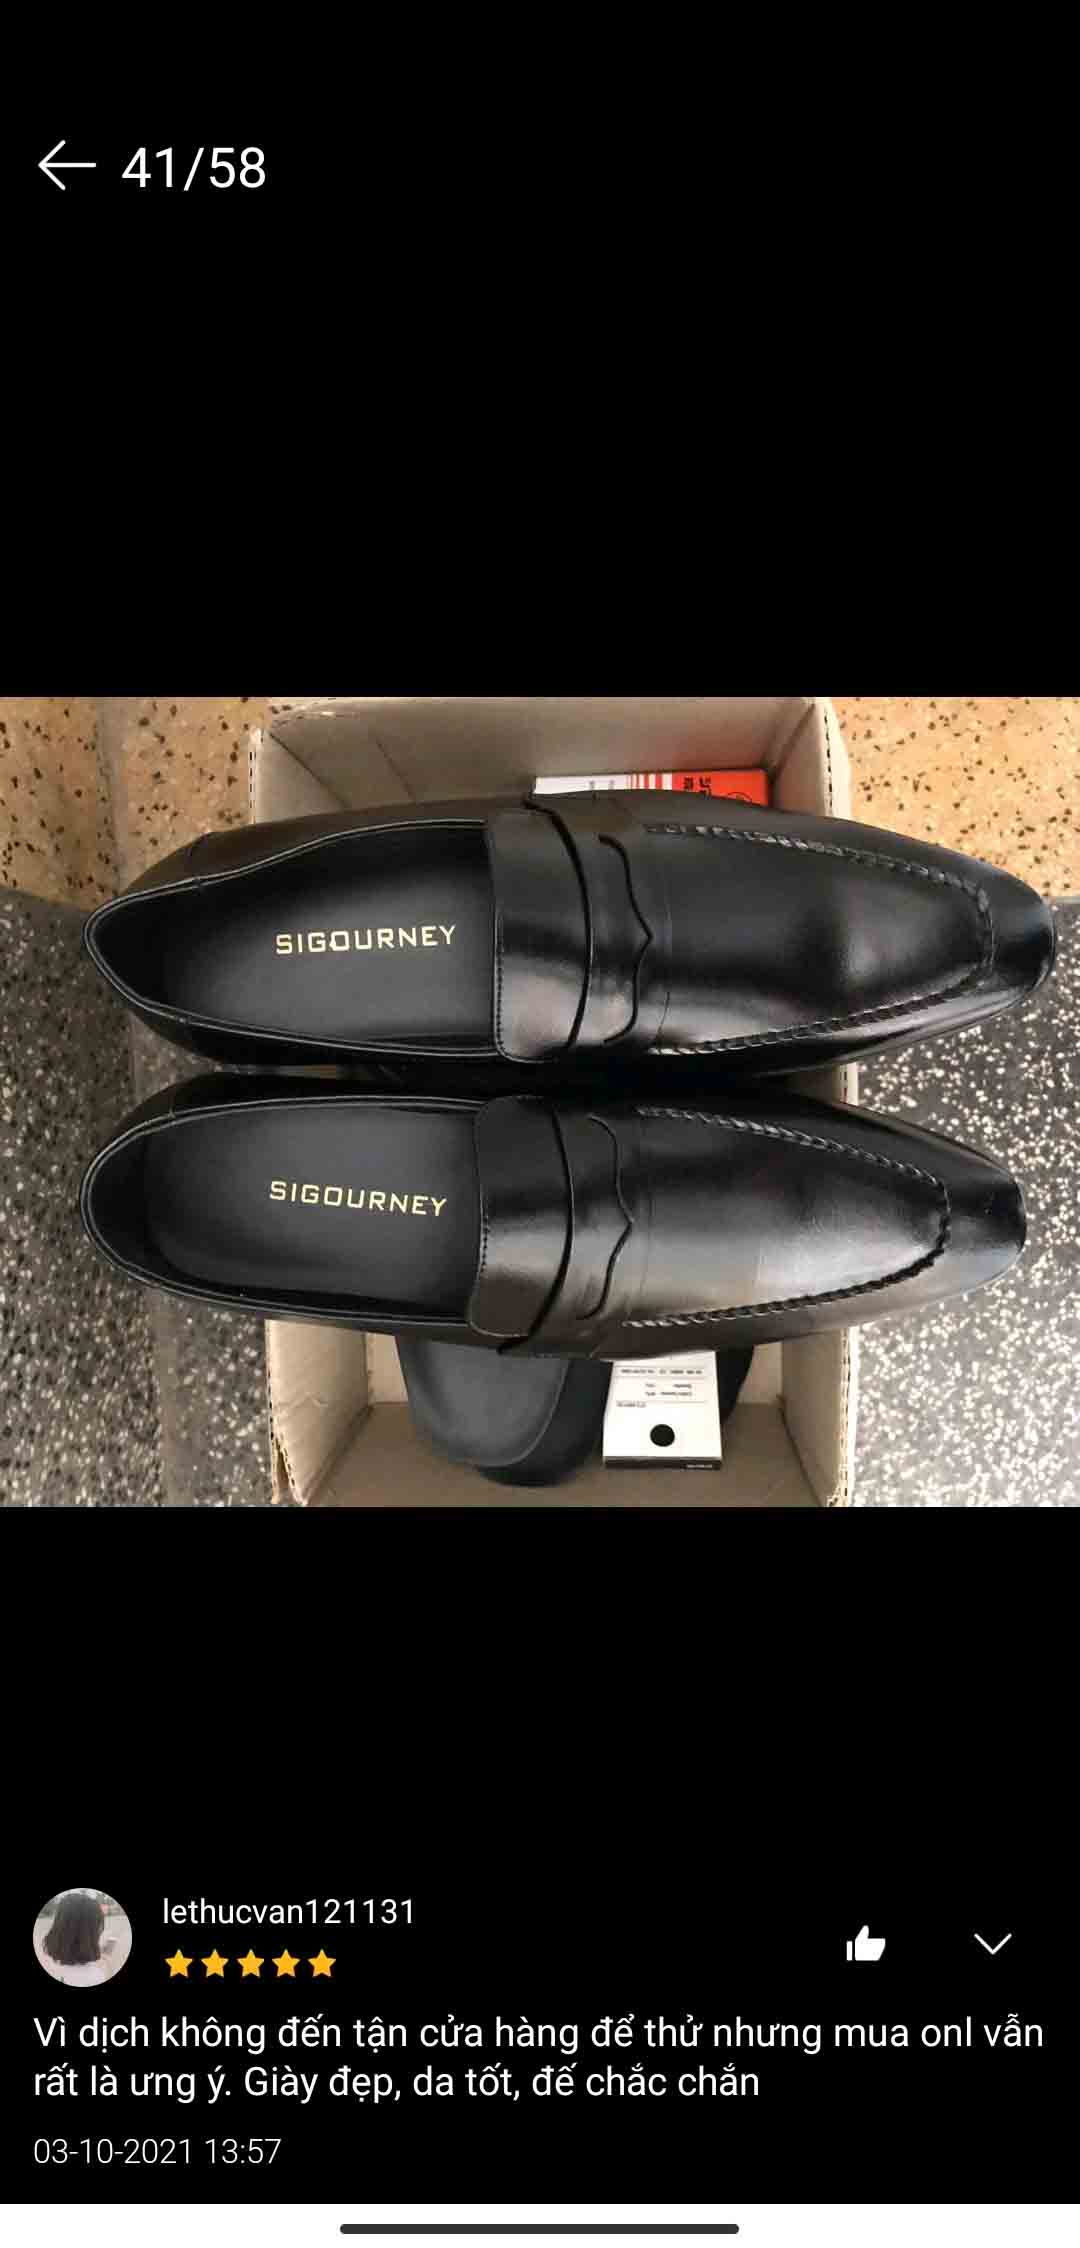 khách hàng đánh giá giày